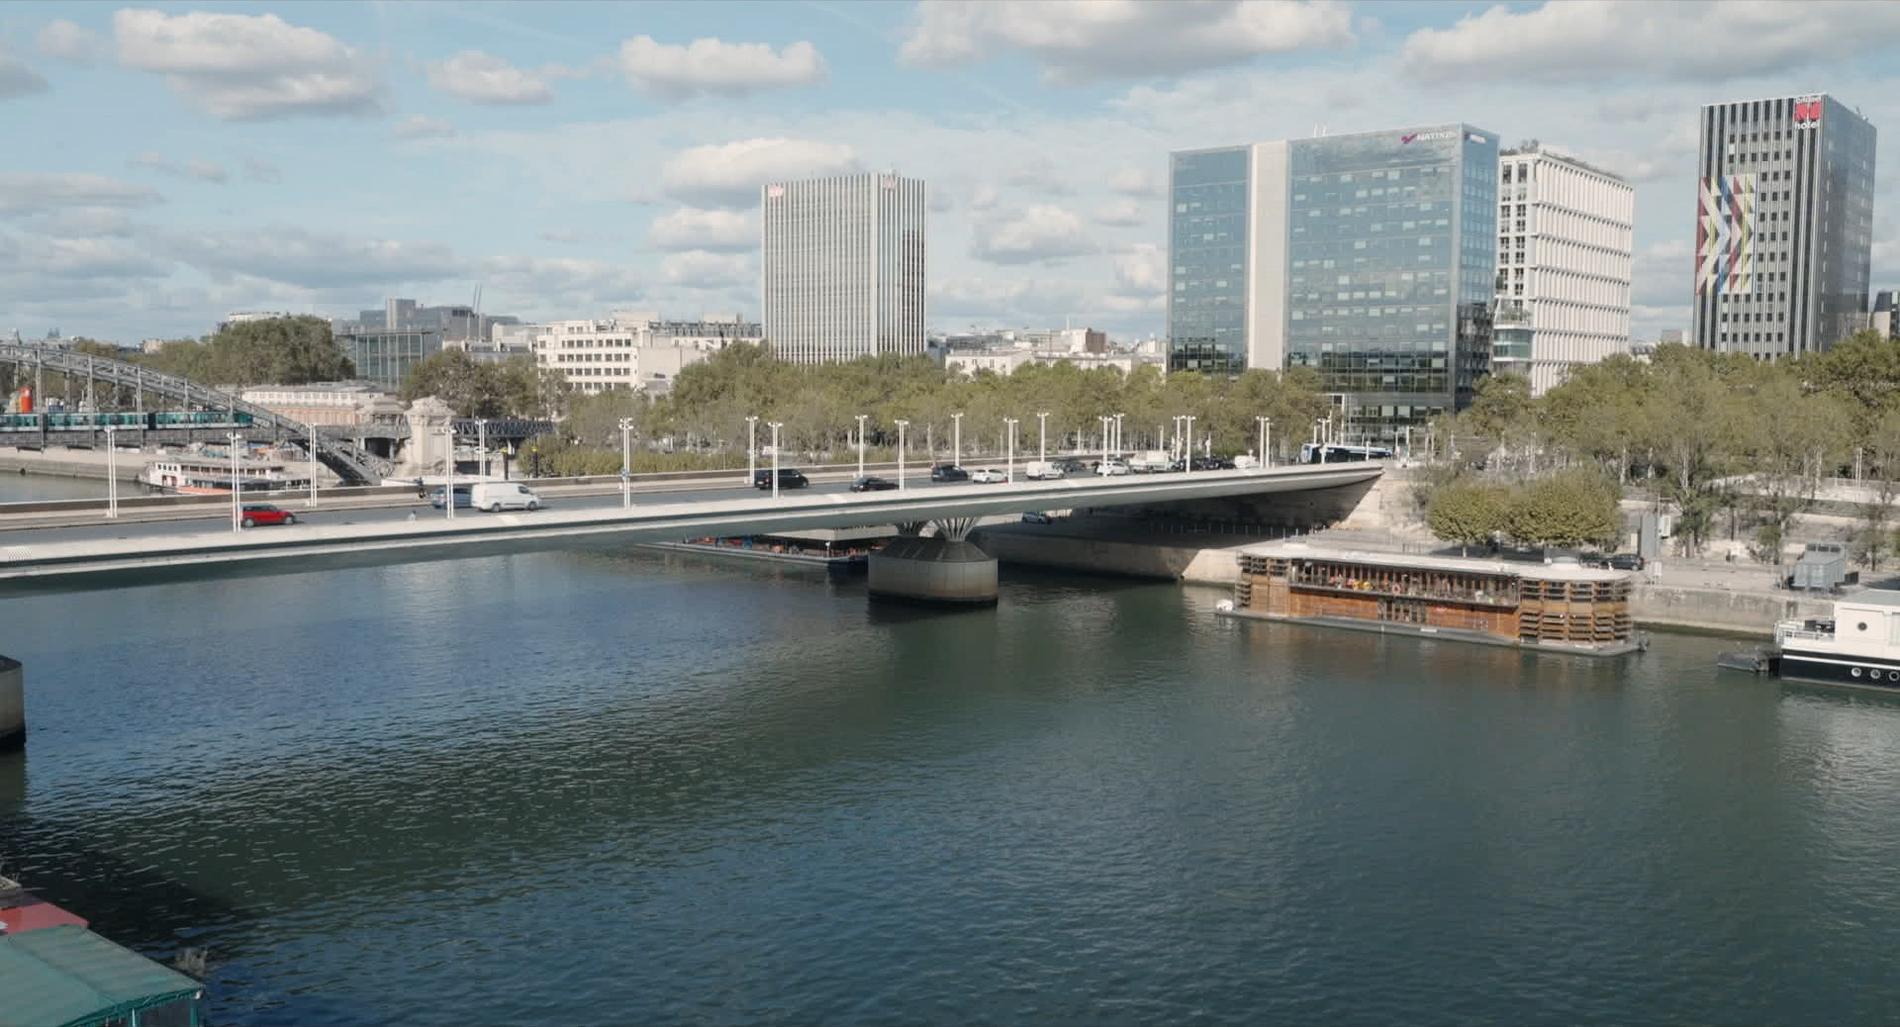 Båten Adamant ligger stadigt förankrad vid en kaj i floden Seine. Här möts människor med olika psykiska problem. Pressbild.